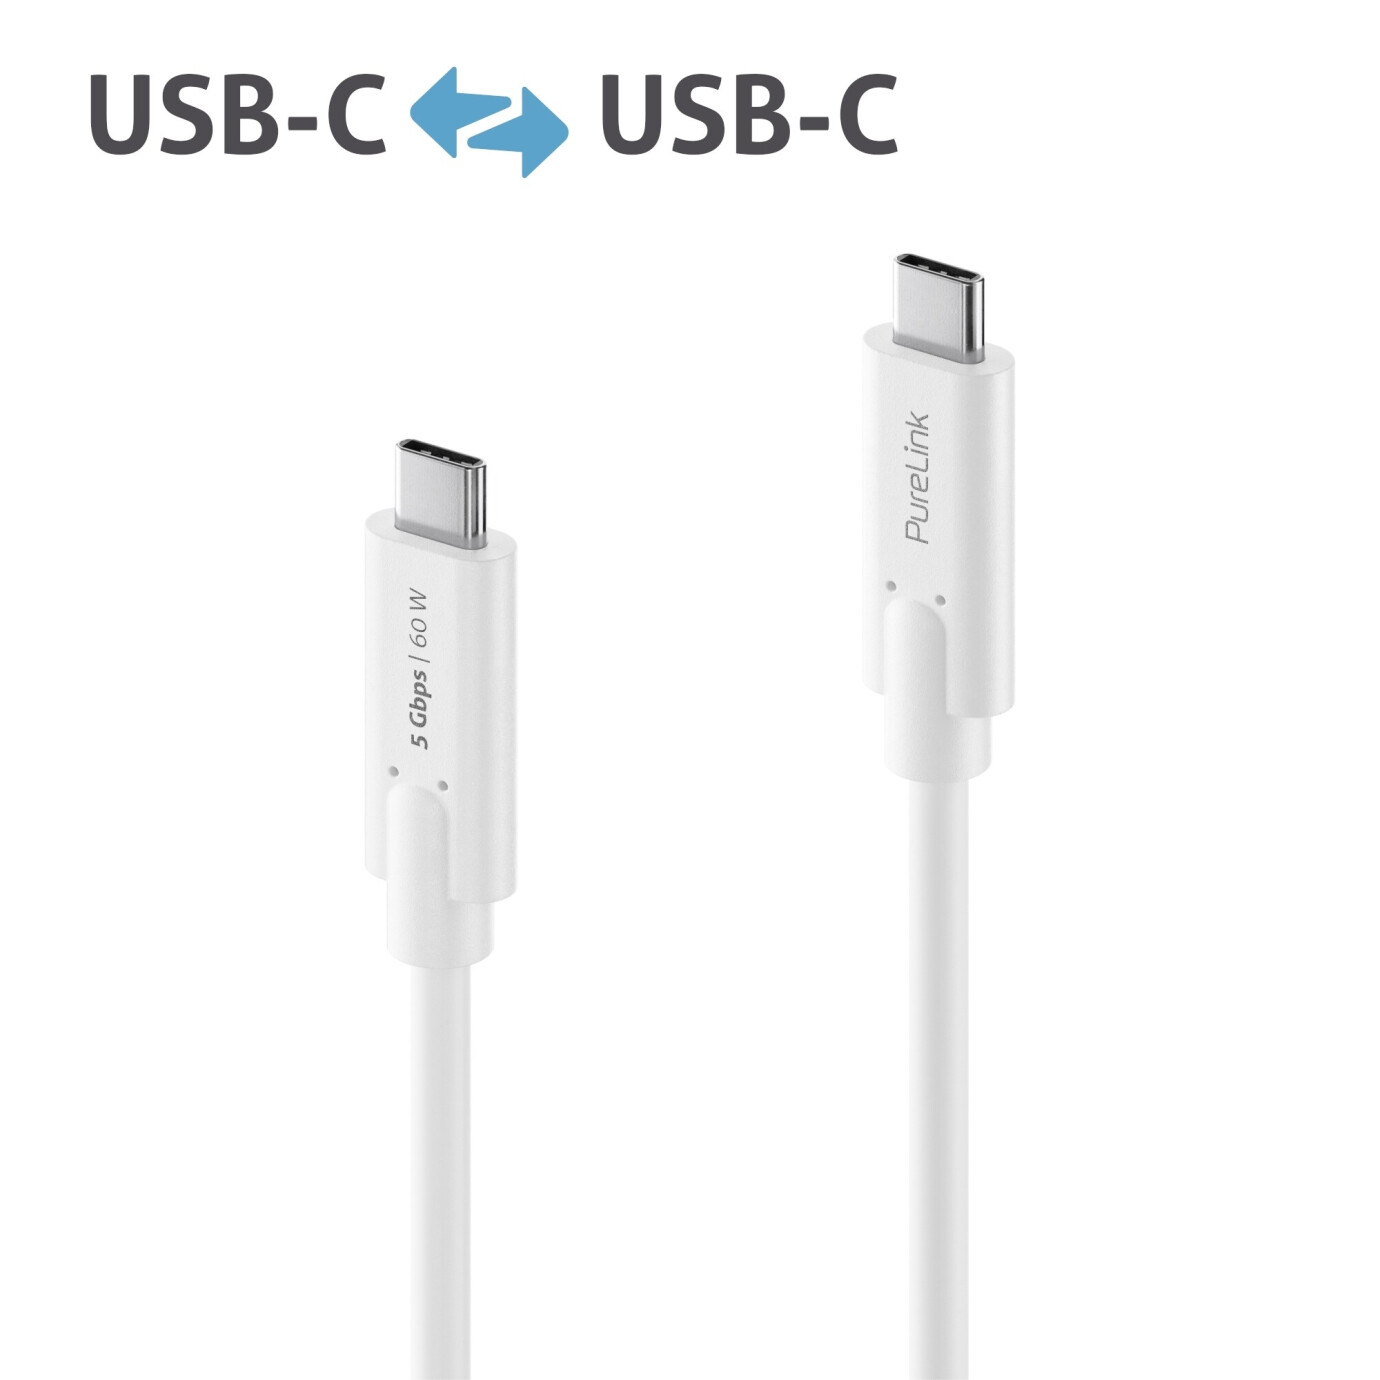 Purelink IS2500-010 USB-C auf USB-C Kabel 1m weiß